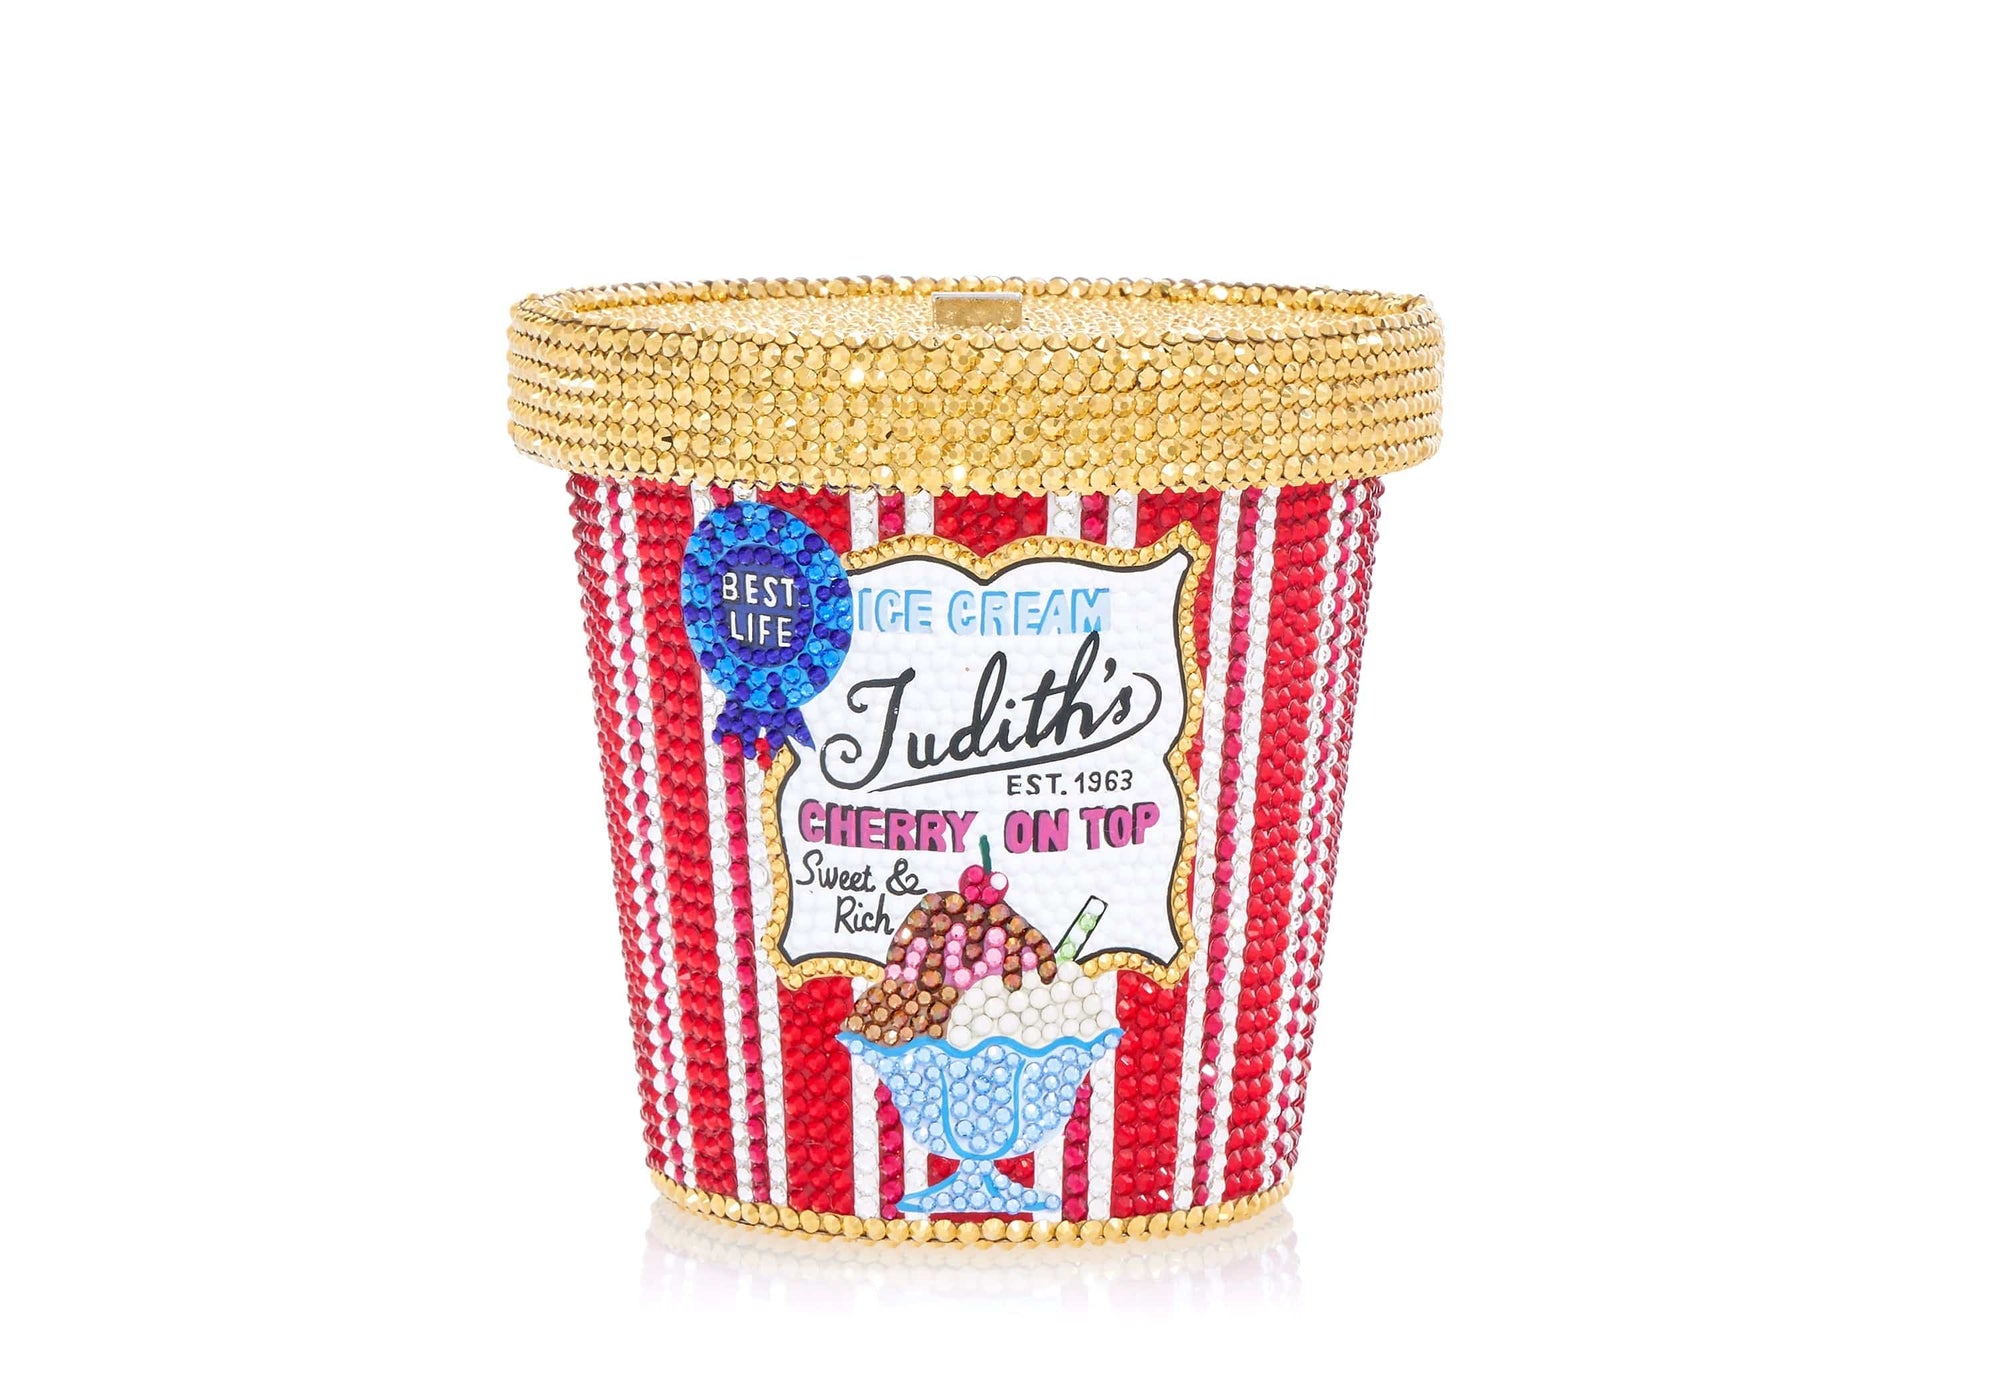 Judith's Best Ice Cream Pint